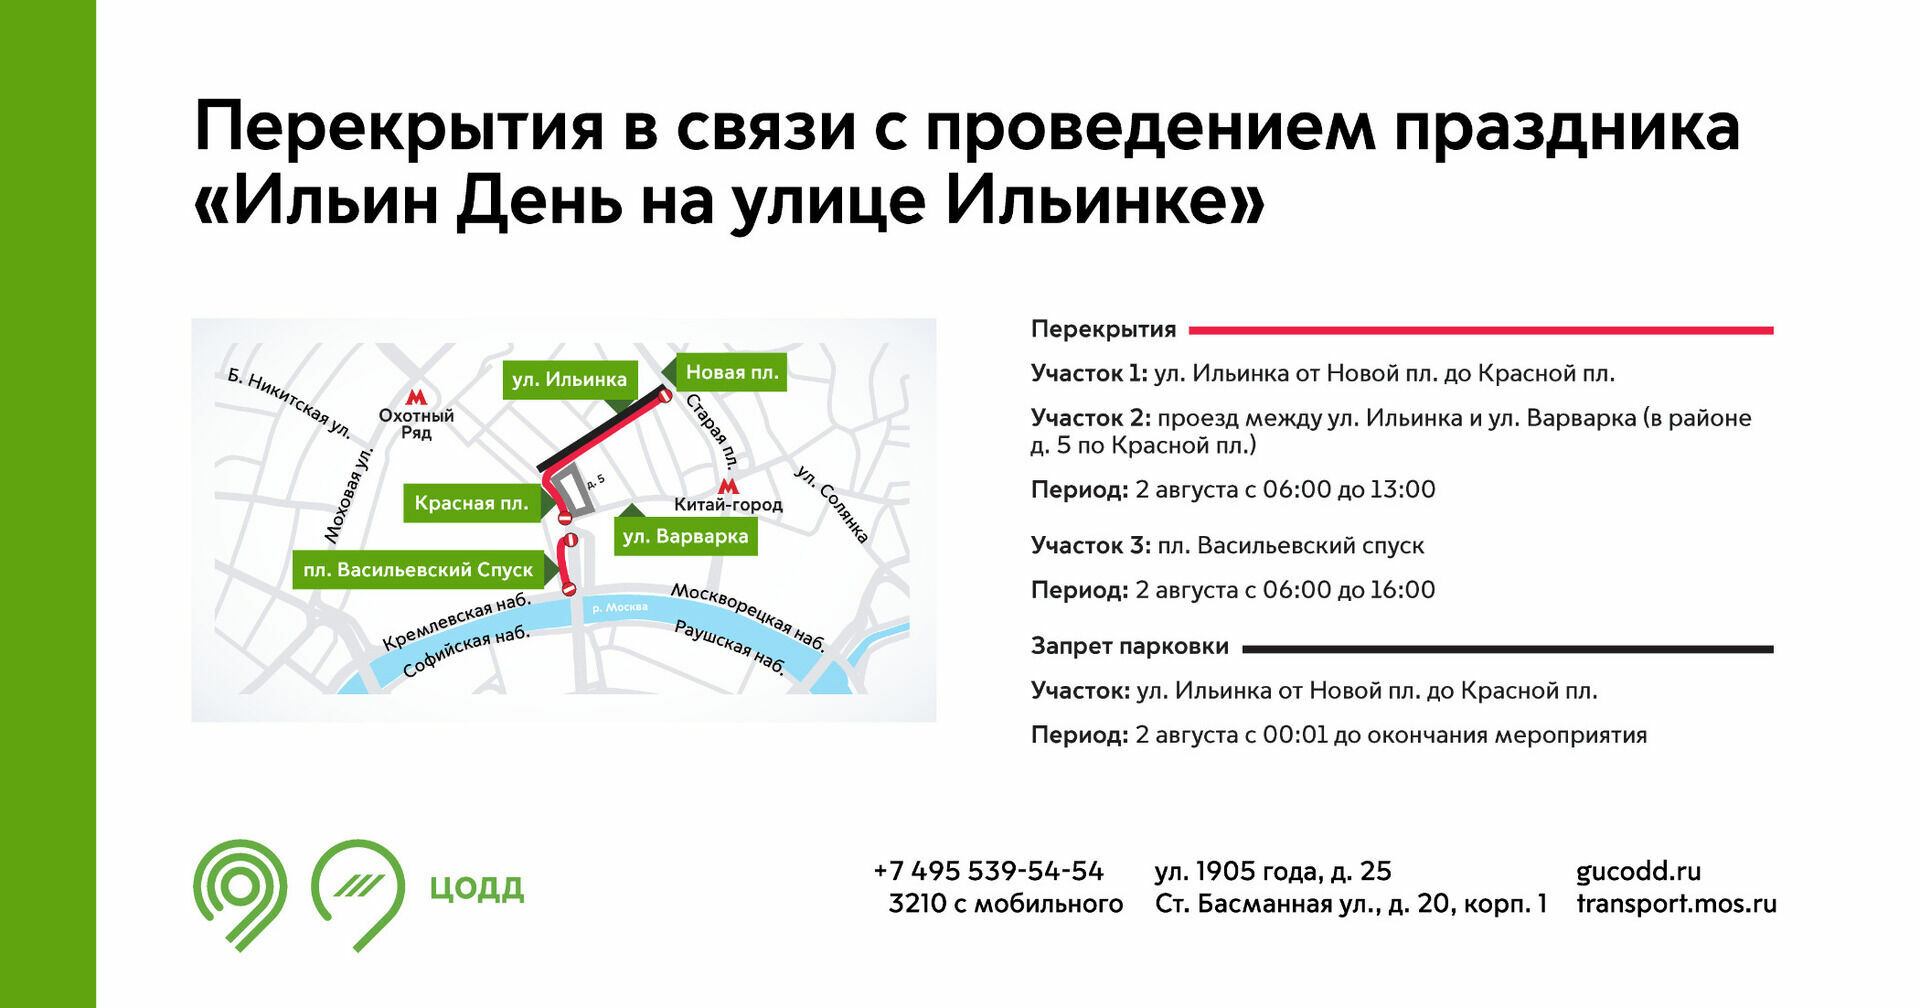 Перекрытие улиц в Москве 2 августа 2022 года